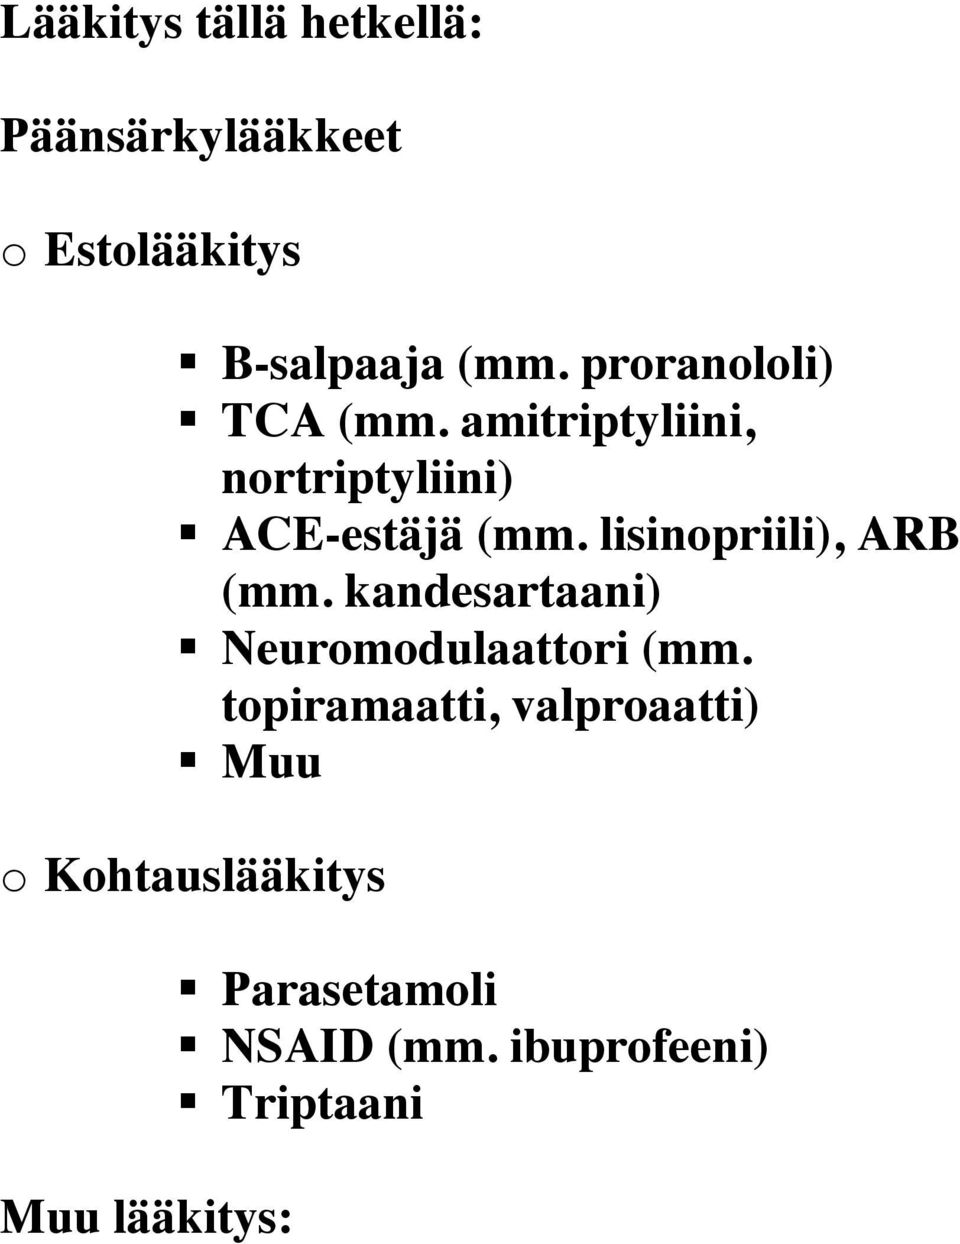 lisinpriili), ARB (mm. kandesartaani) Neurmdulaattri (mm.